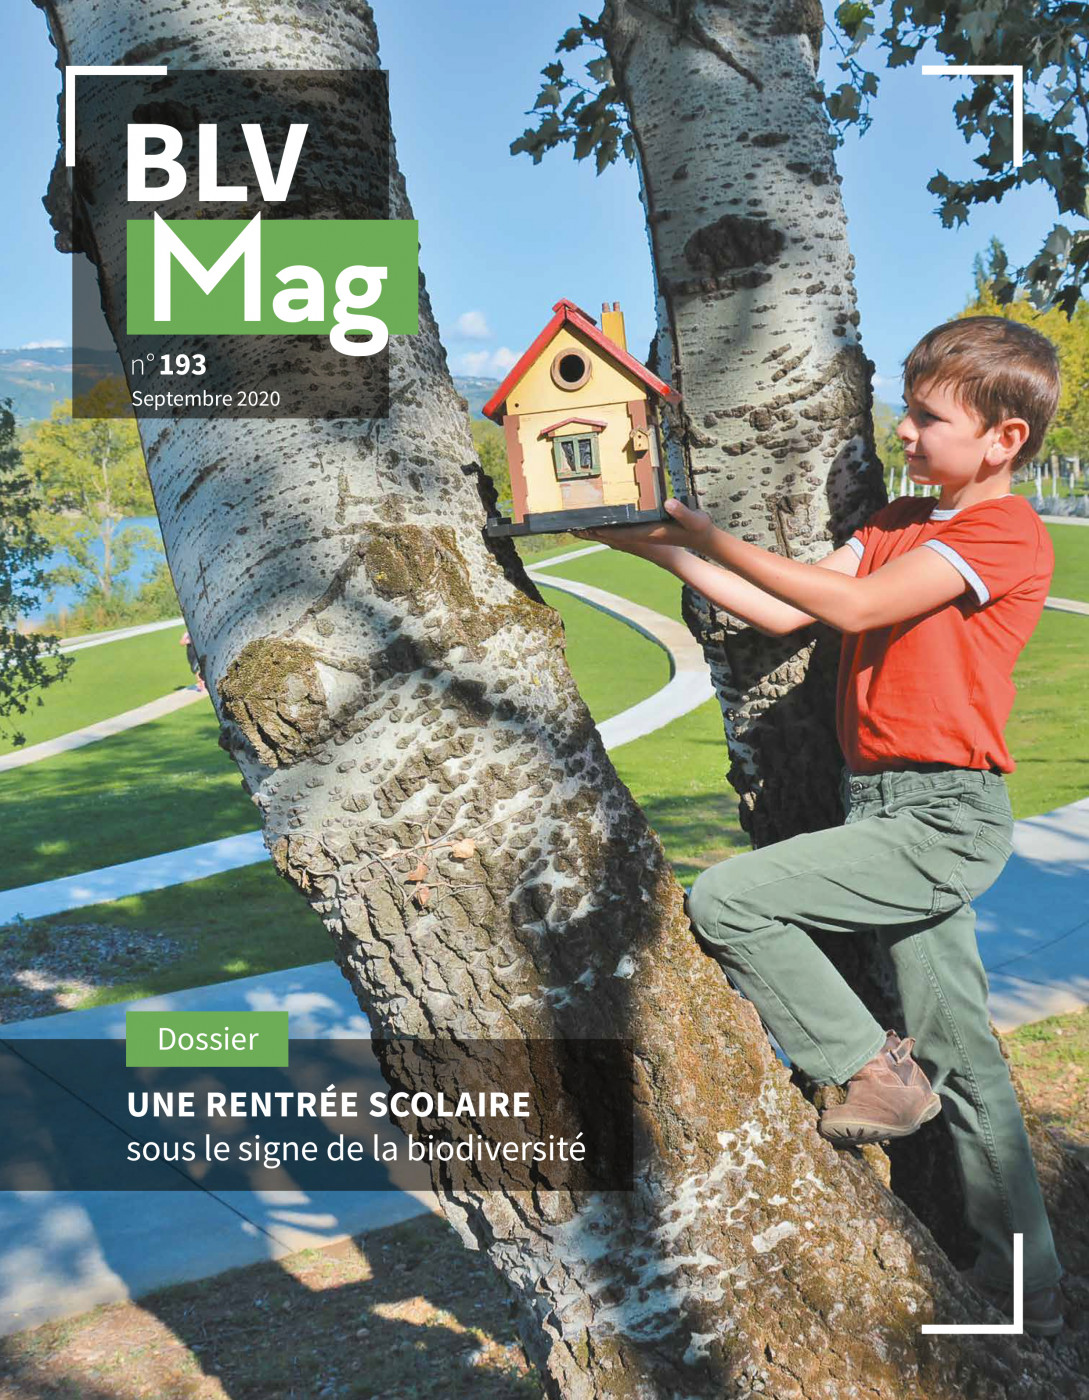 BLV Mag n°193 – Septembre 2020